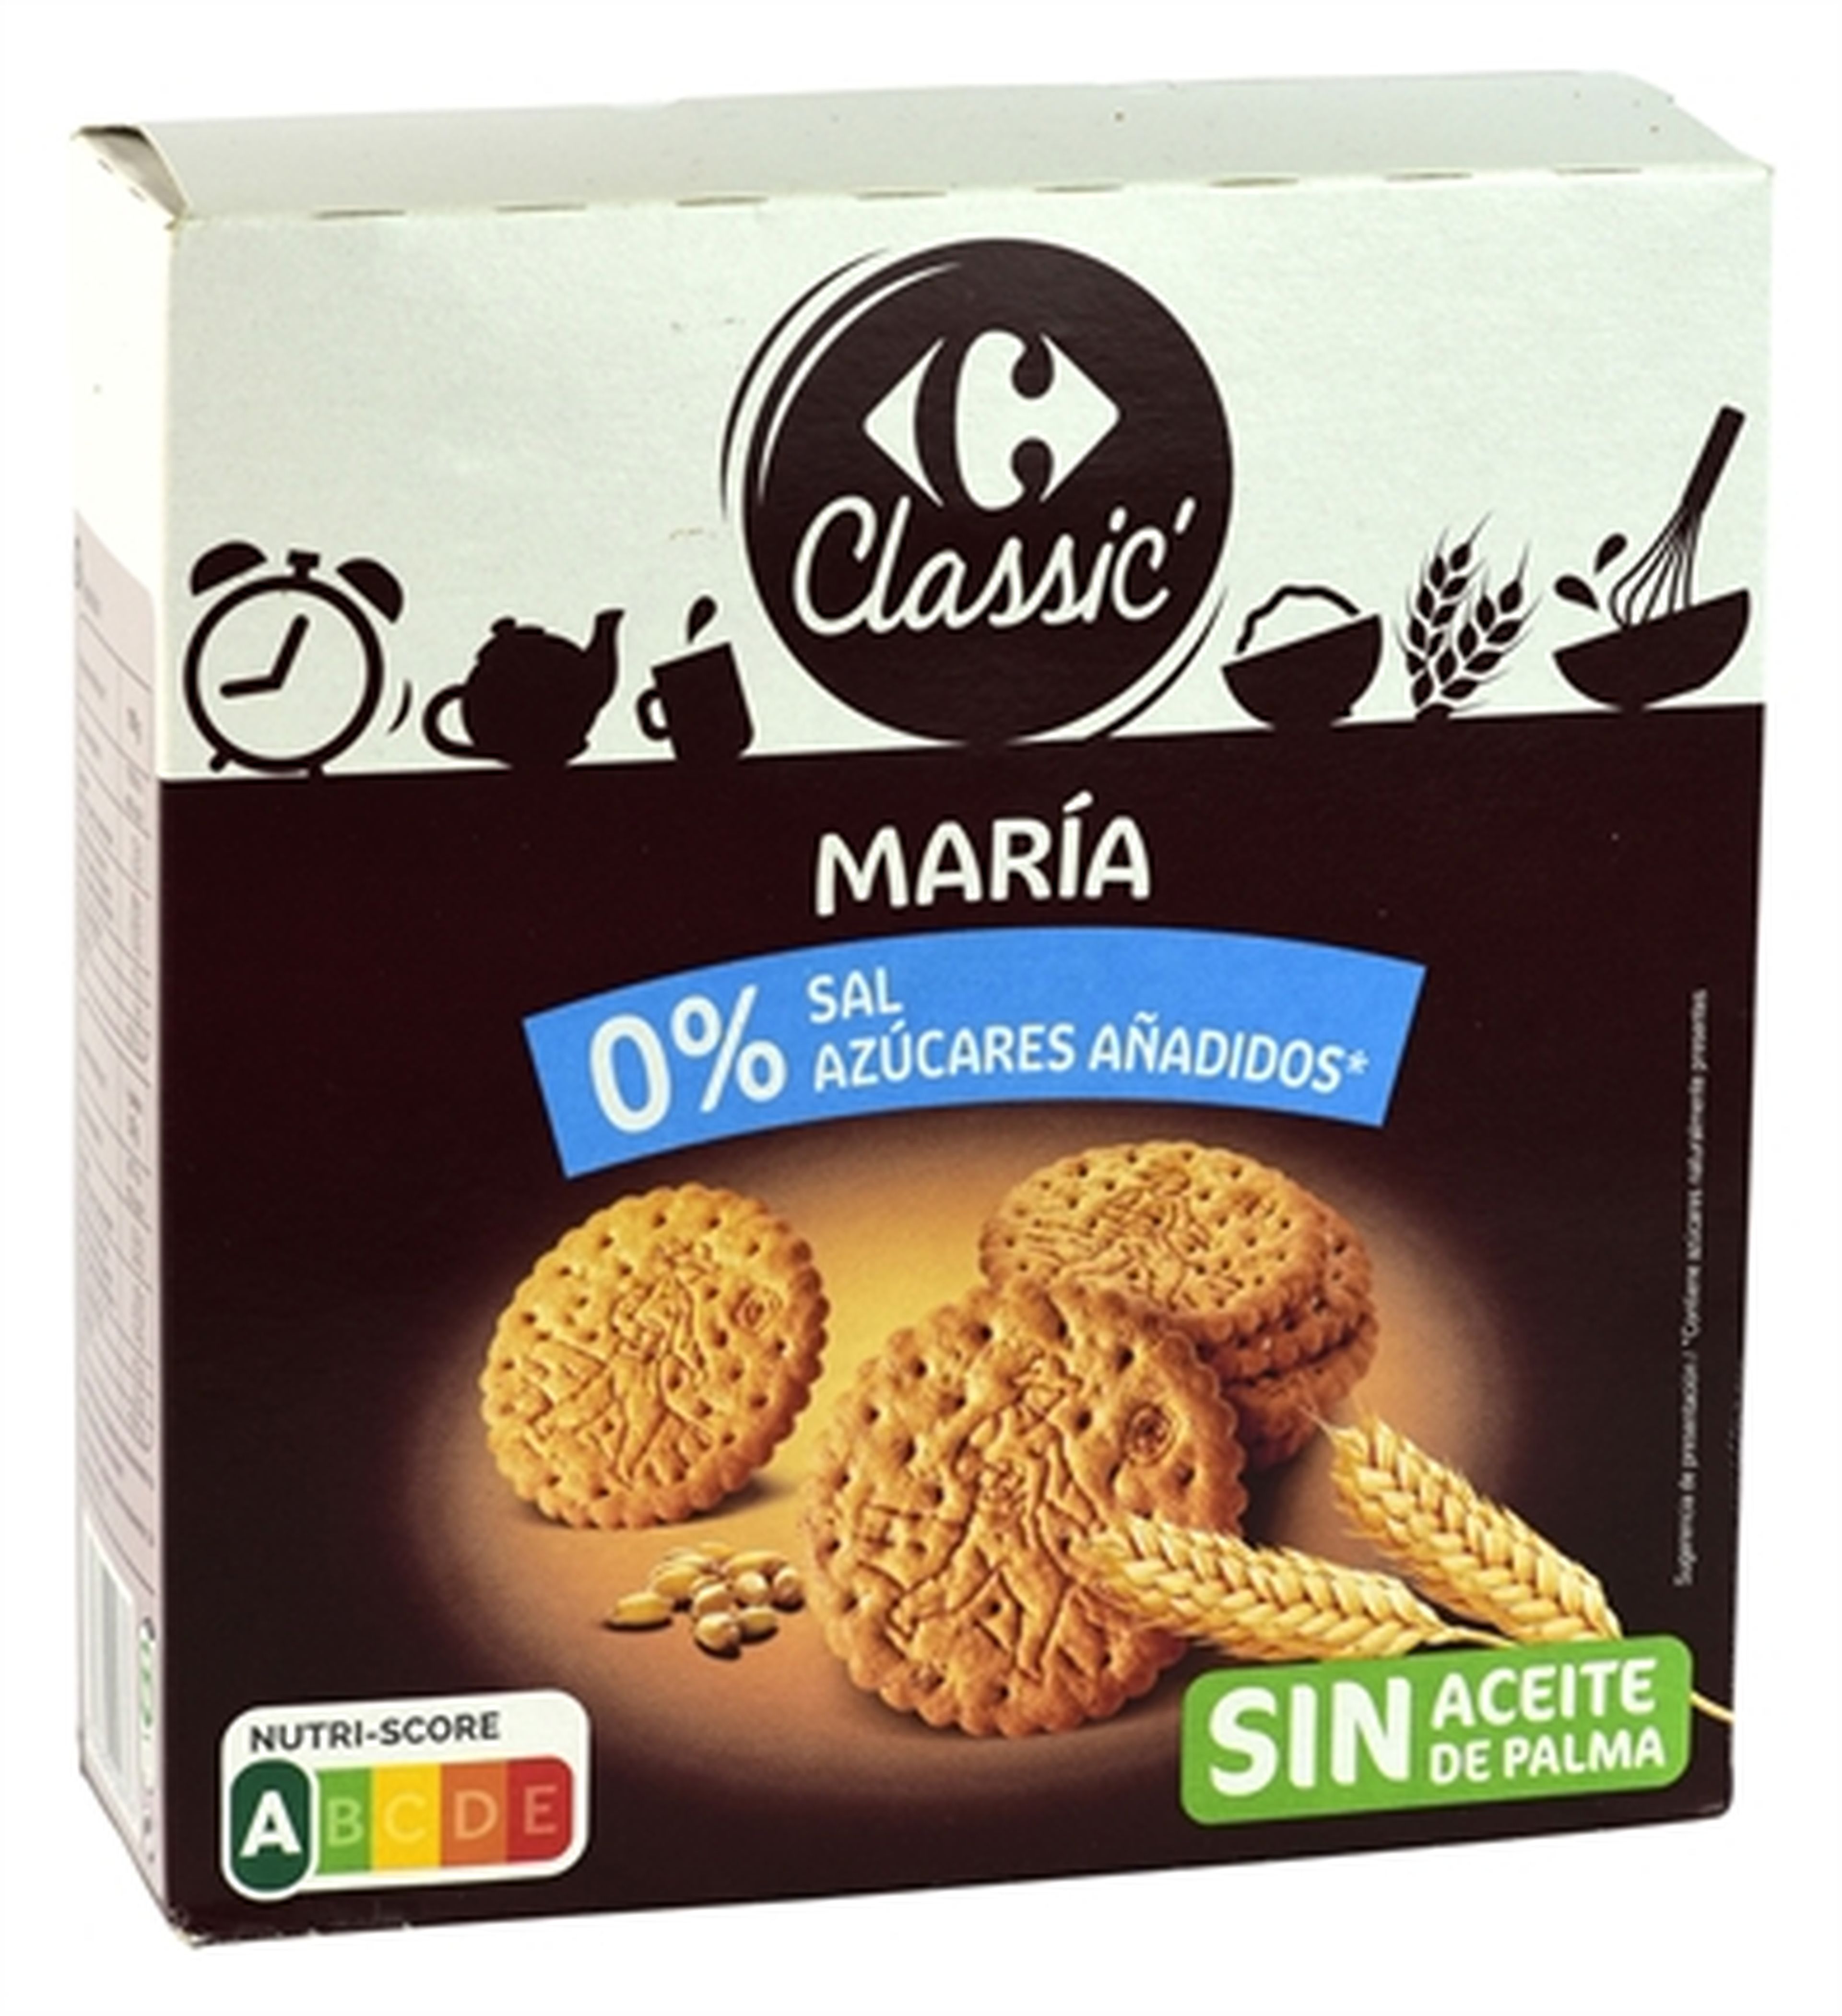 Peores (y mejores) galletas del supermercado en España, según la OCU